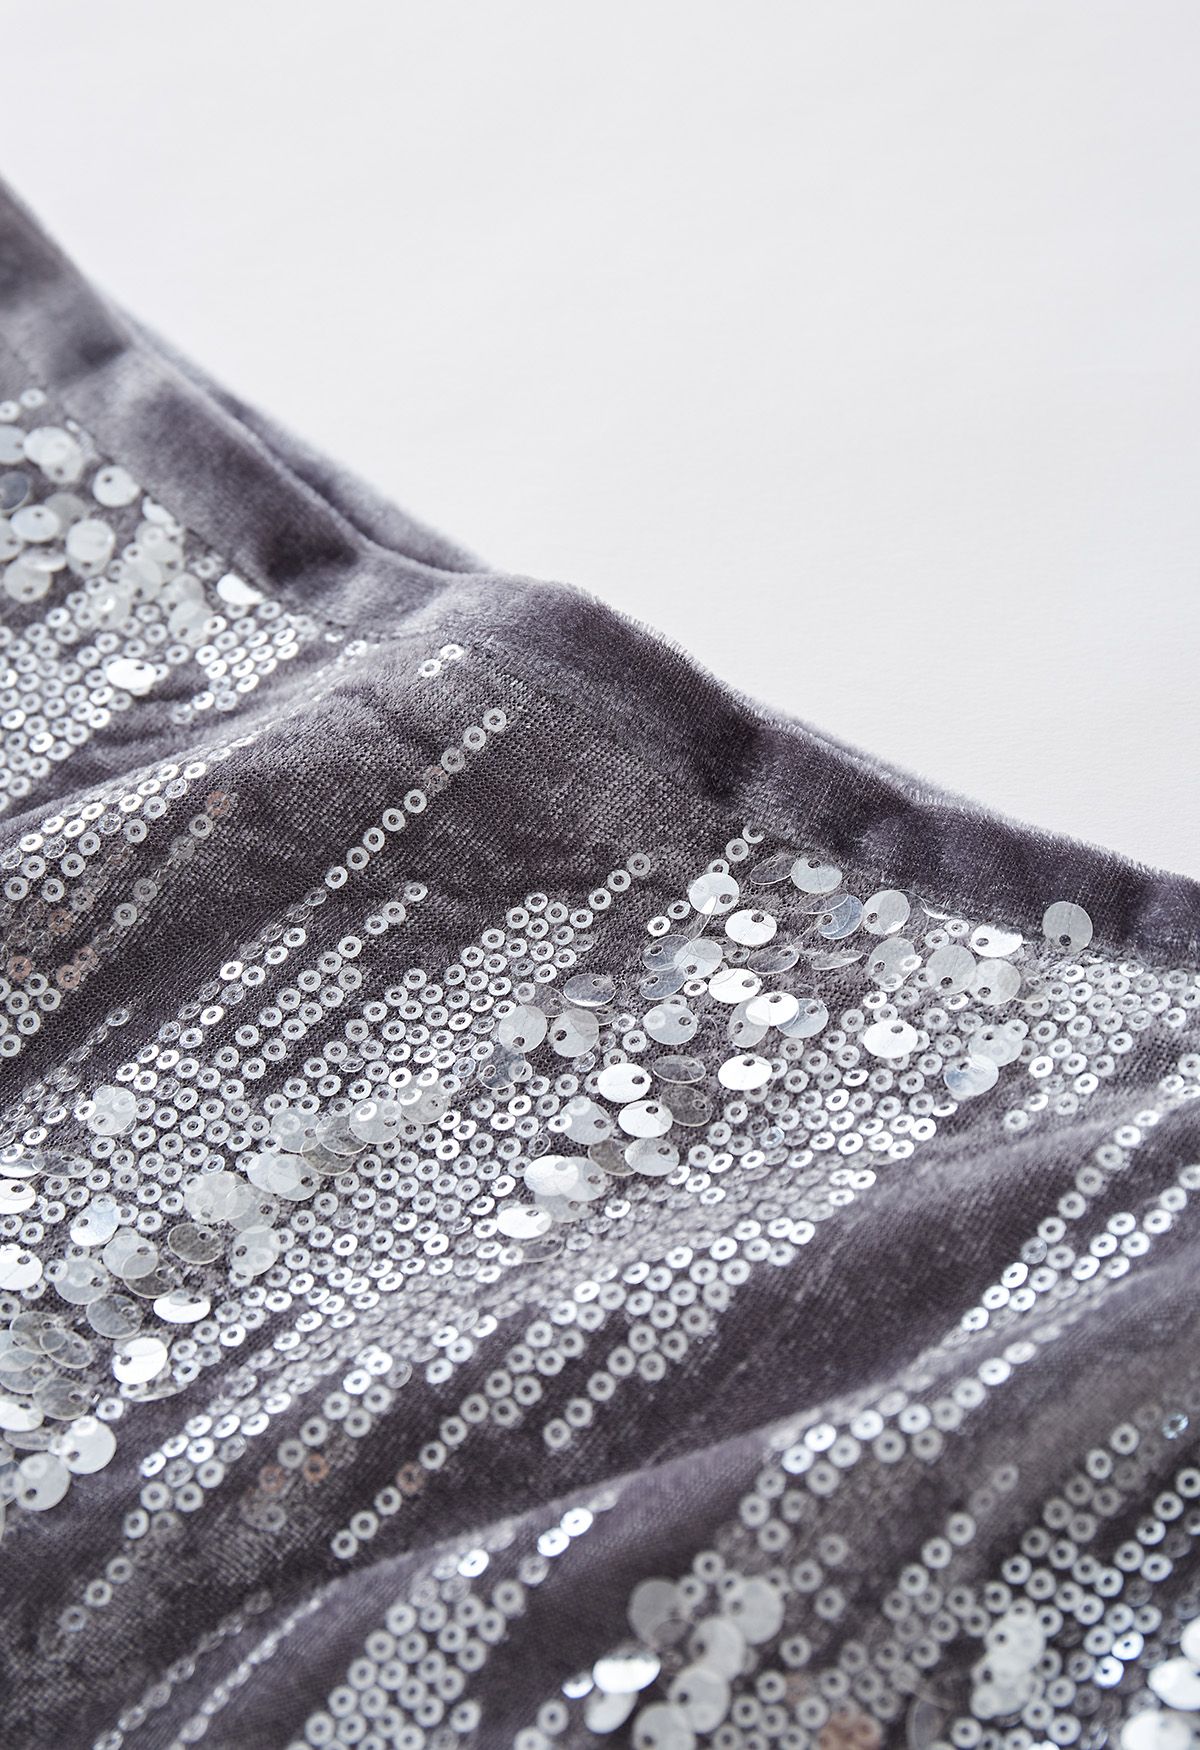 Velvet Sequins Embellished Pencil Skirt in Grey